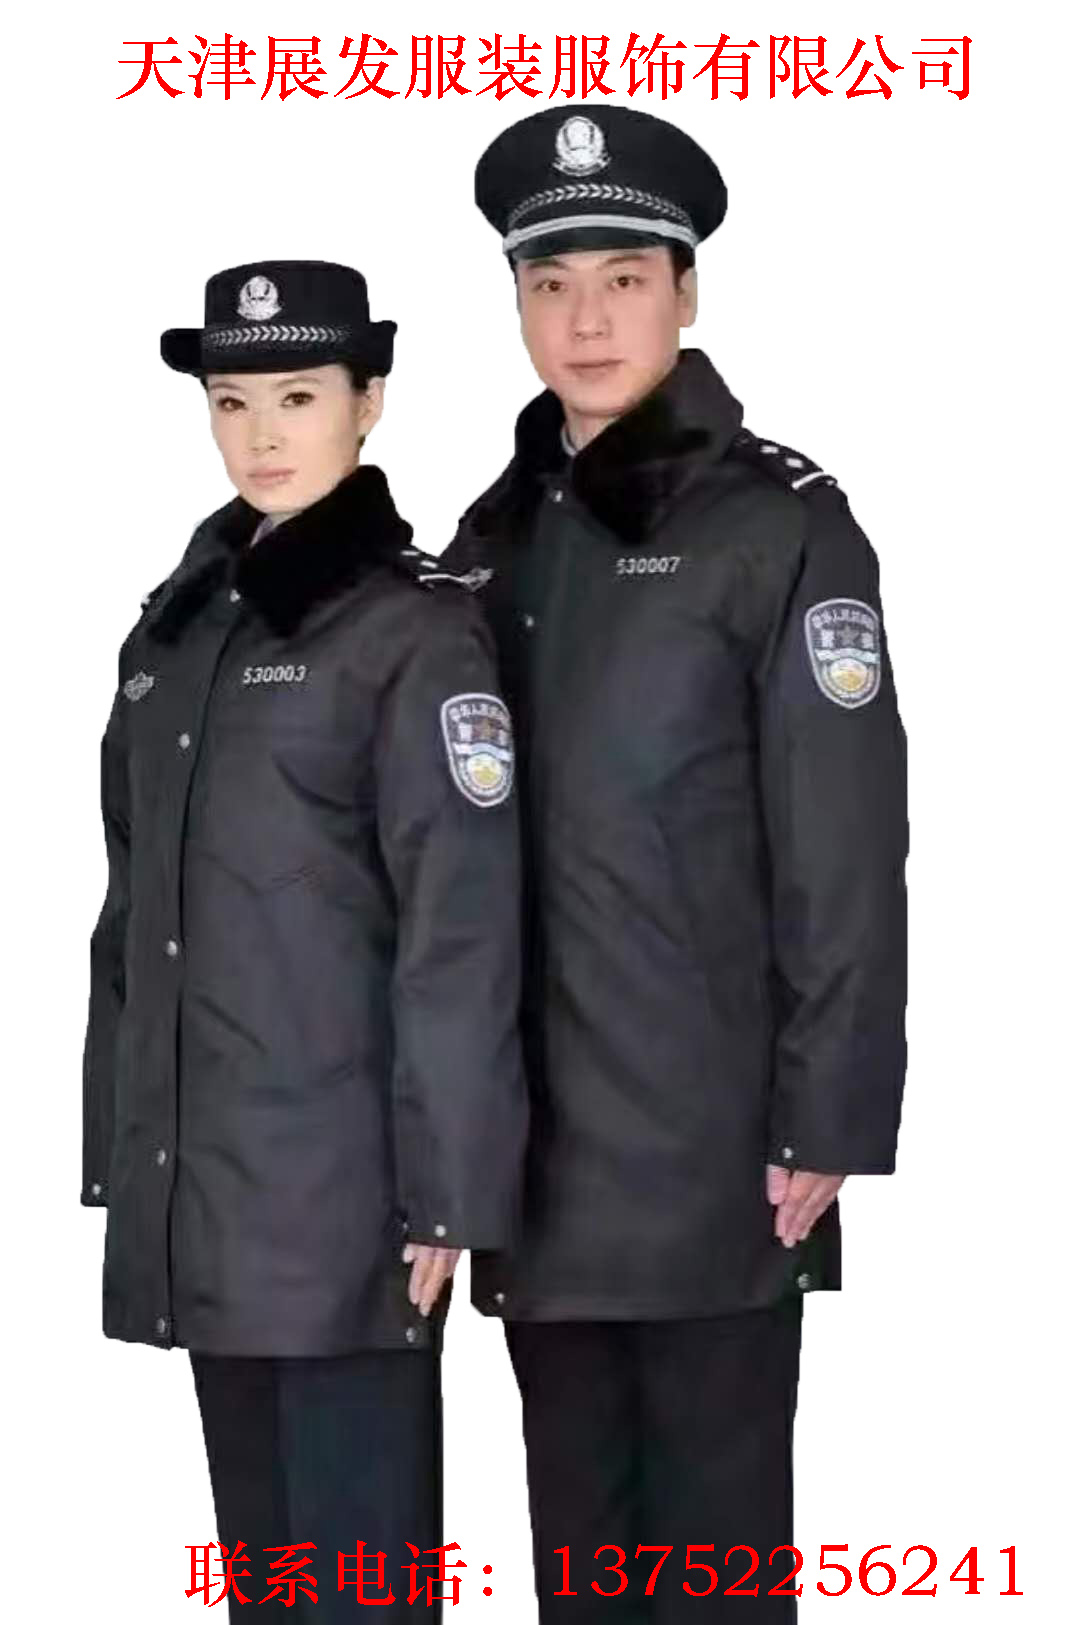 公安服装专卖店 警察图片